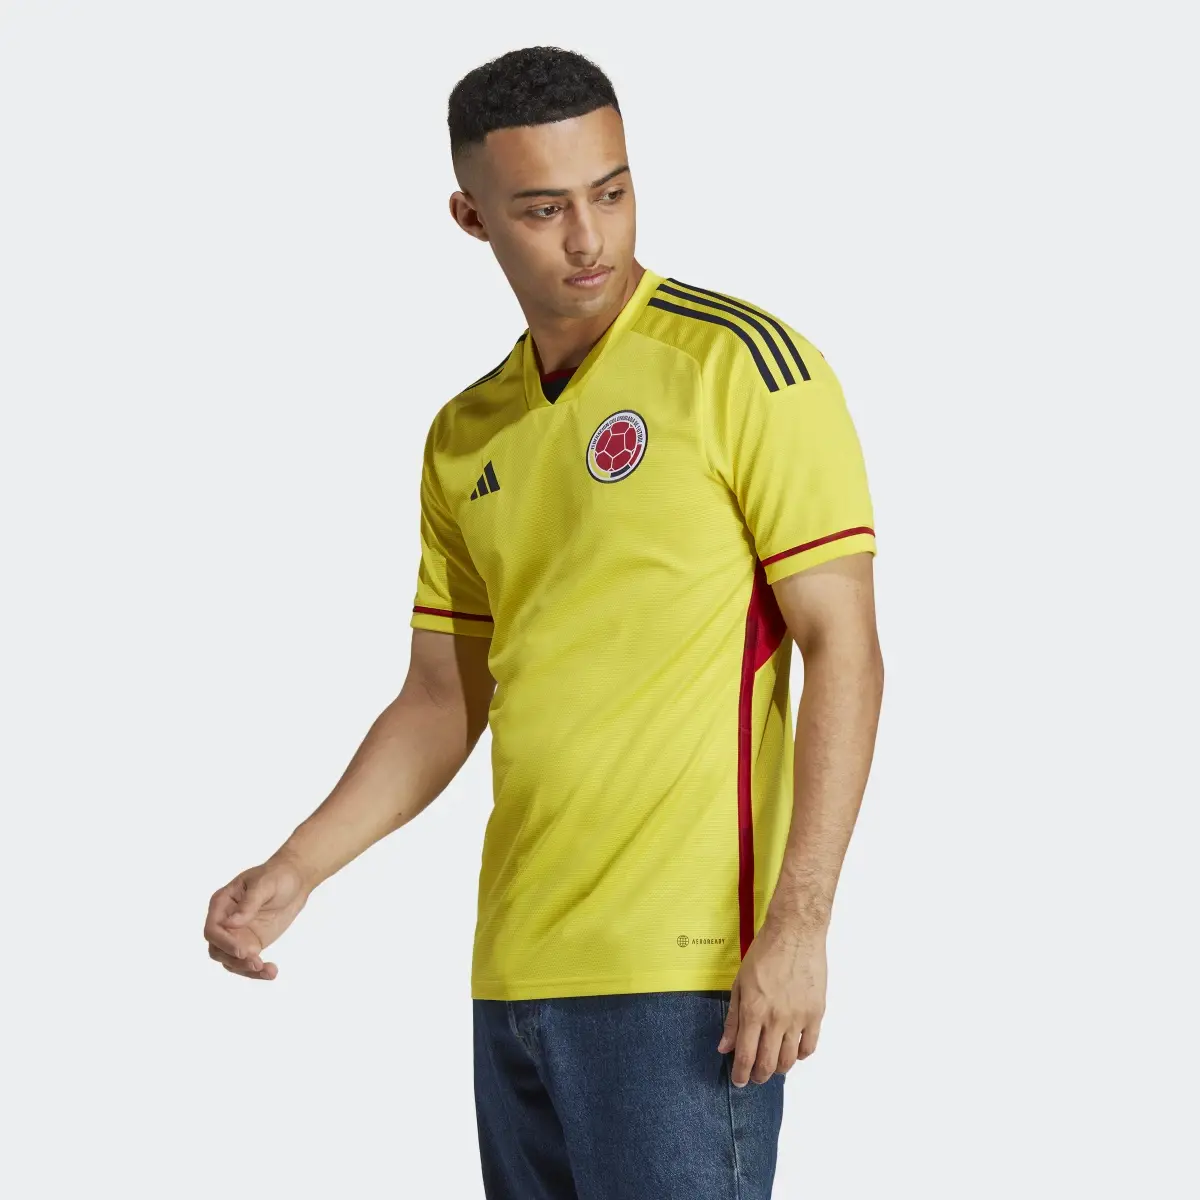 Adidas Jersey Uniforme de Local Selección Colombia 22. 3